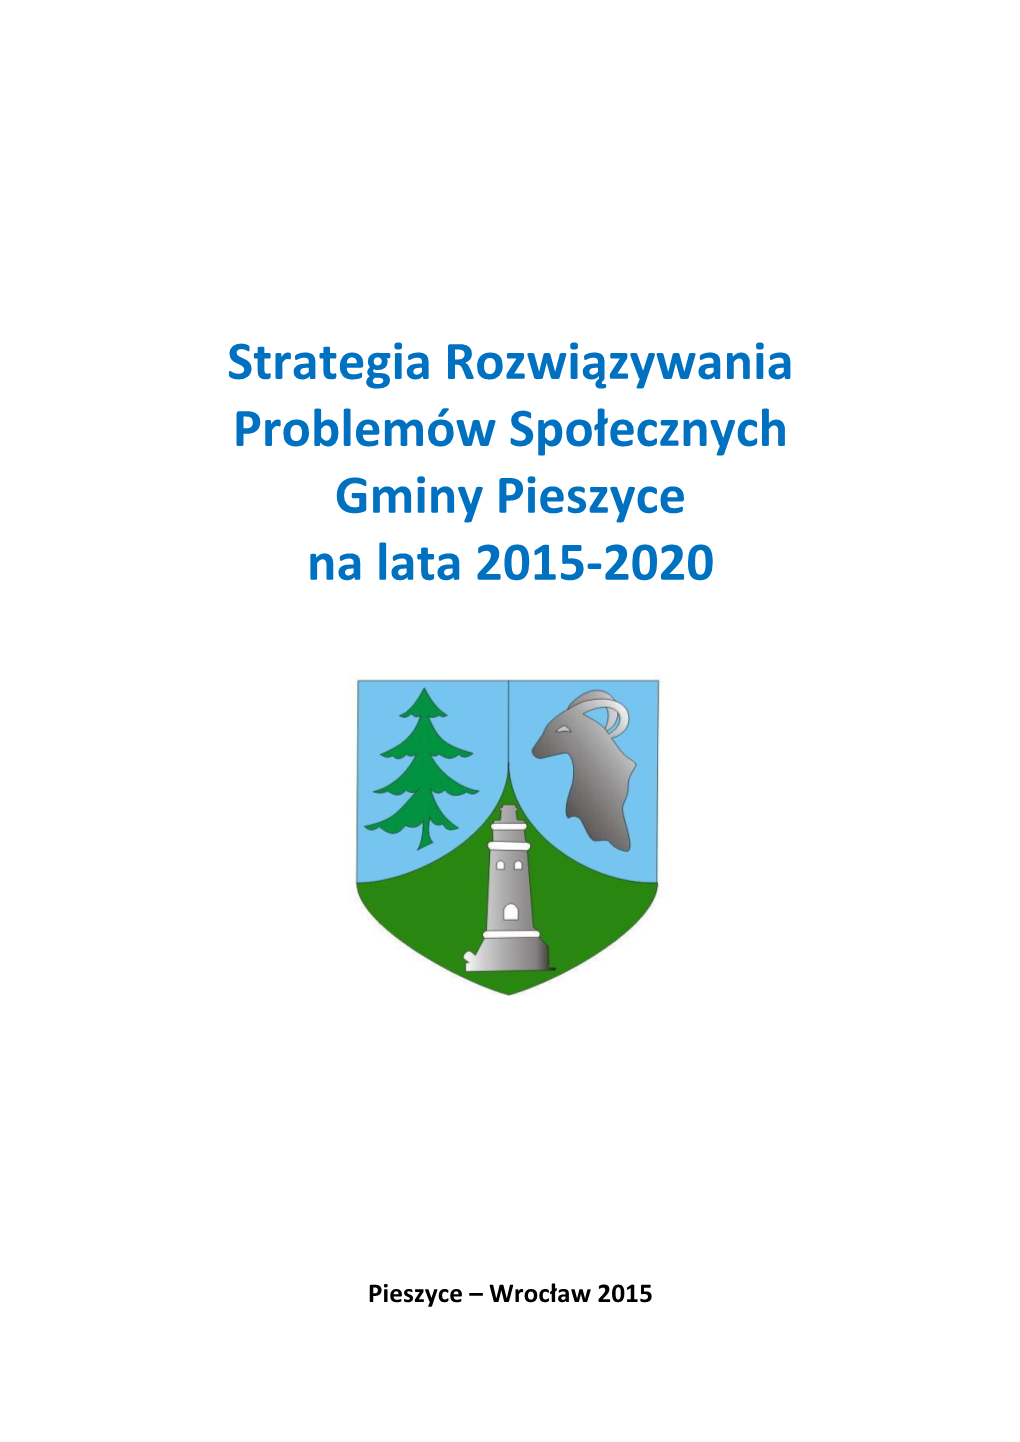 Strategia Rozwiązywania Problemów Społecznych Gminy Pieszyce Na Lata 2015-2020